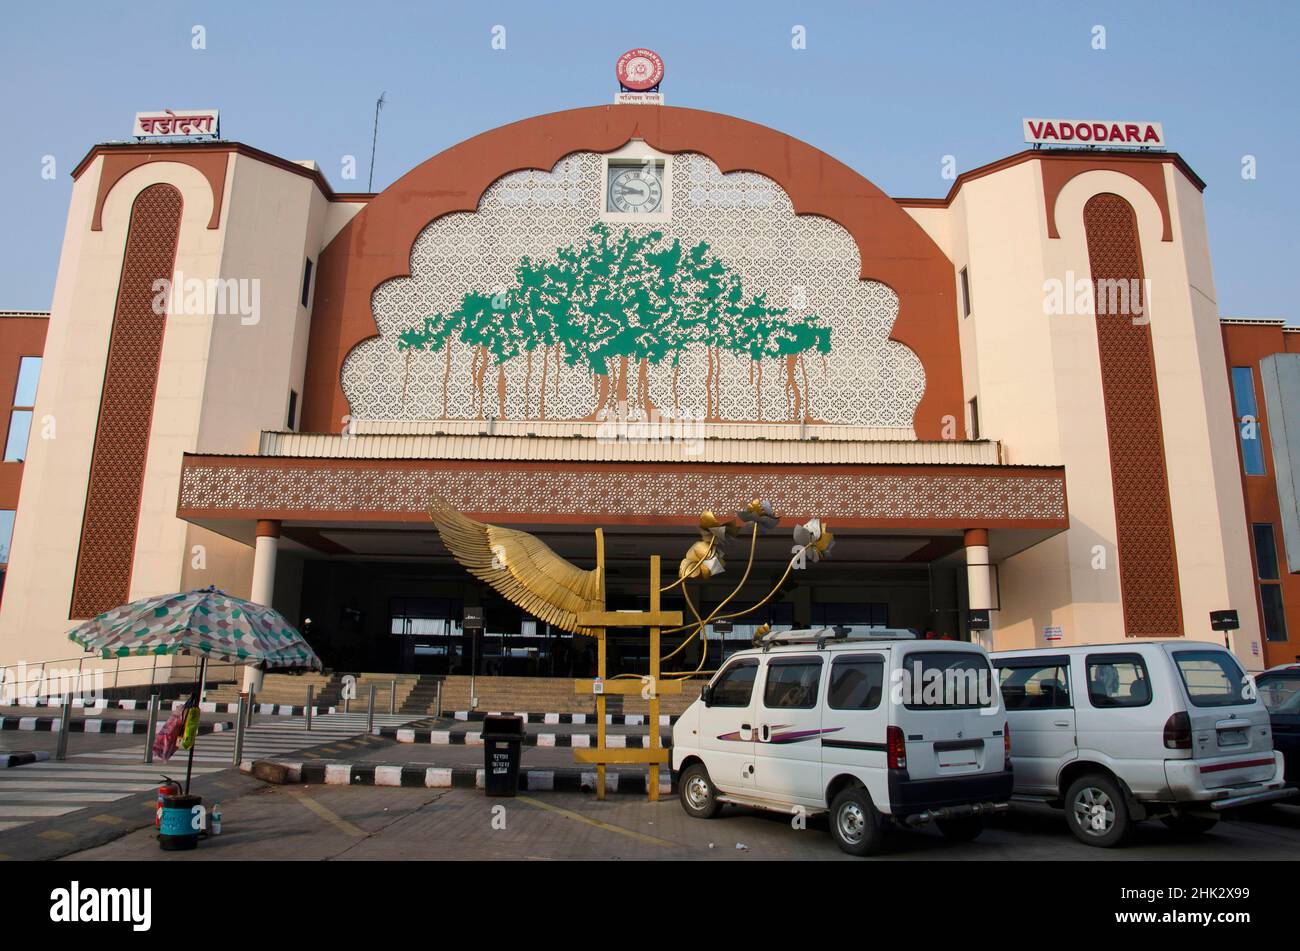 Estación de ferrocarril decorada, situada en Vadodara, Gujarat, India Foto de stock